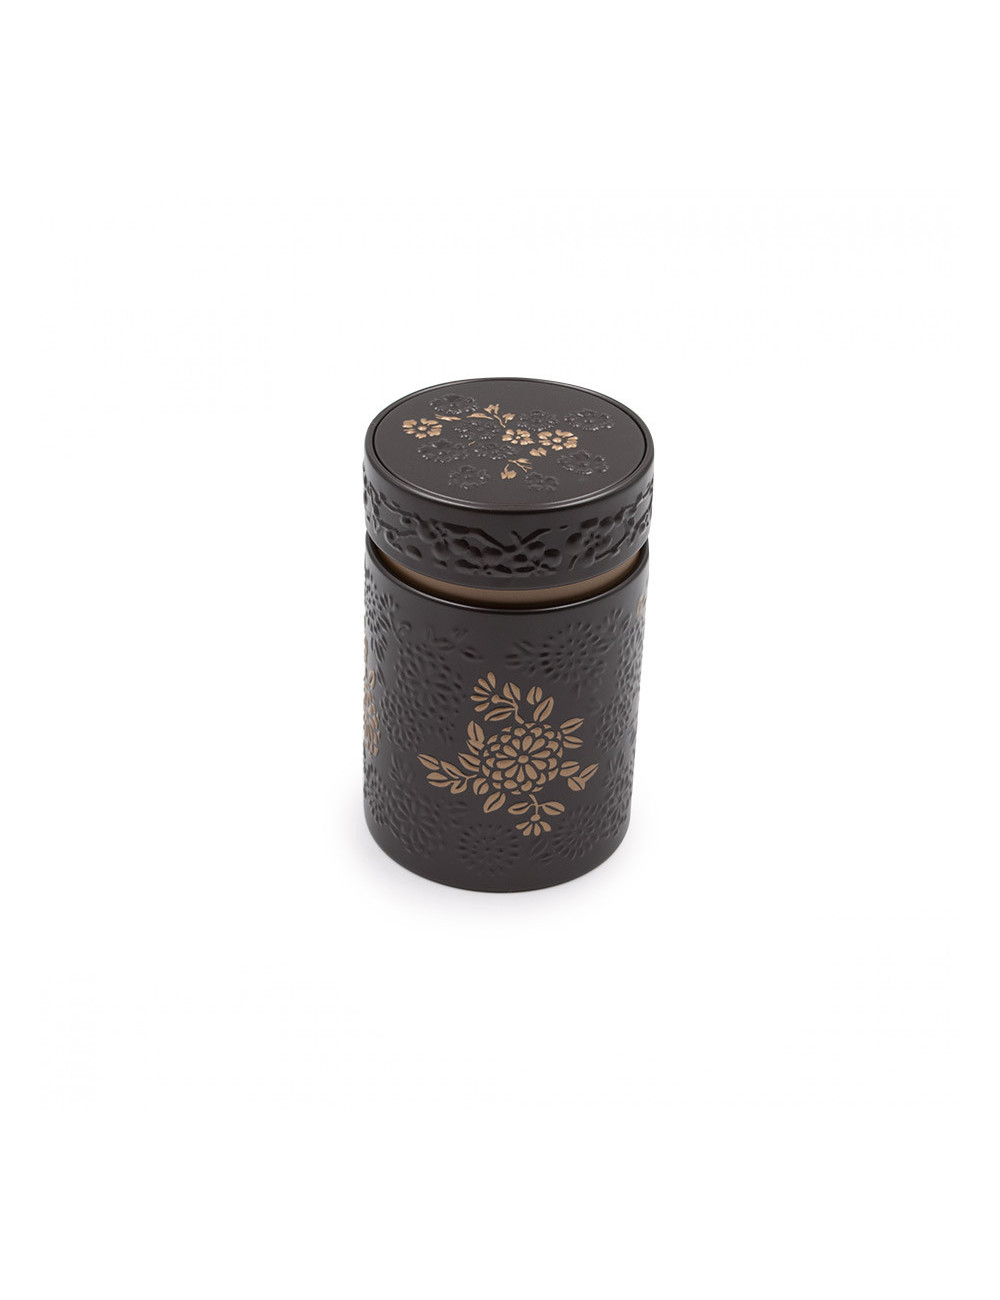 Bellissimo barattolo porta tè marrone scuro opaco con fiori a rilievo - La Pianta del Tè Vendita online